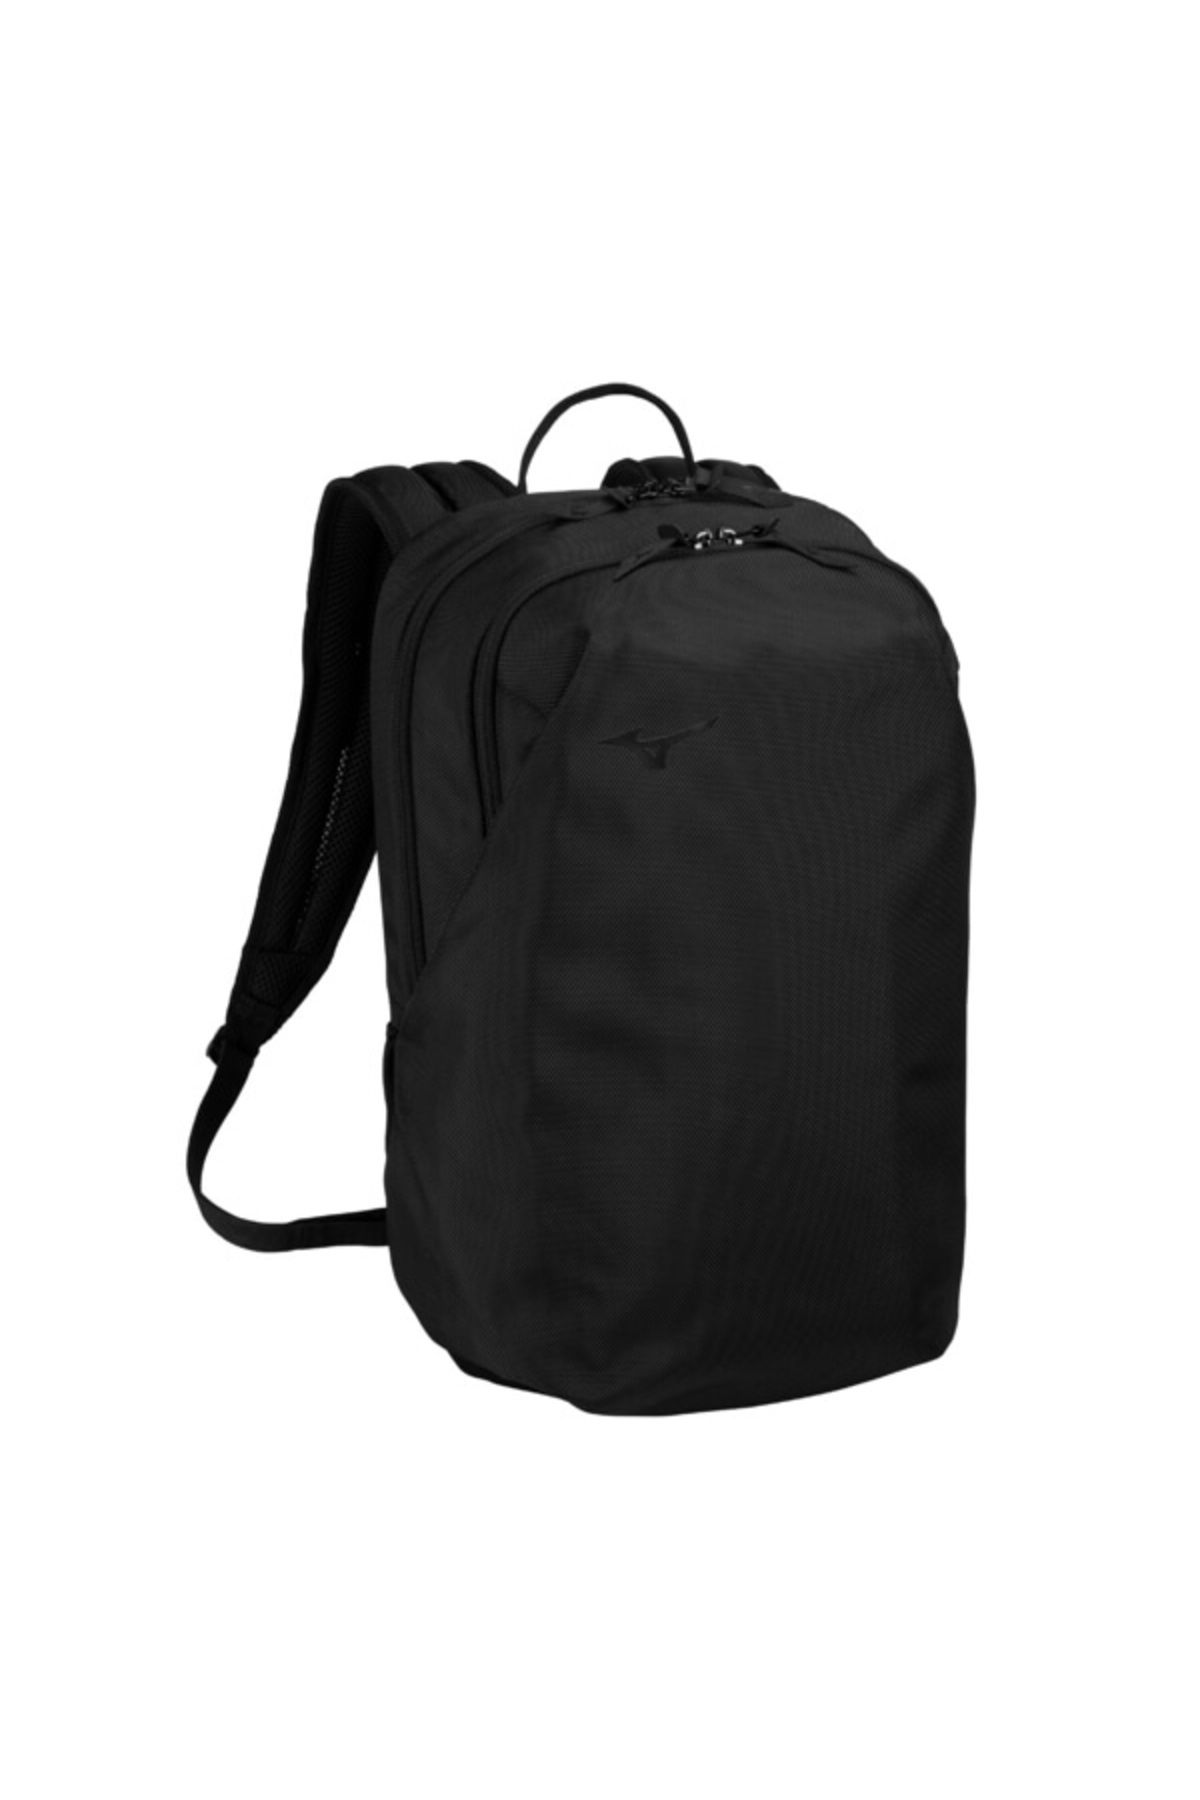 Mizuno Backpack 20 Unisex Sırt Çantası Siyah